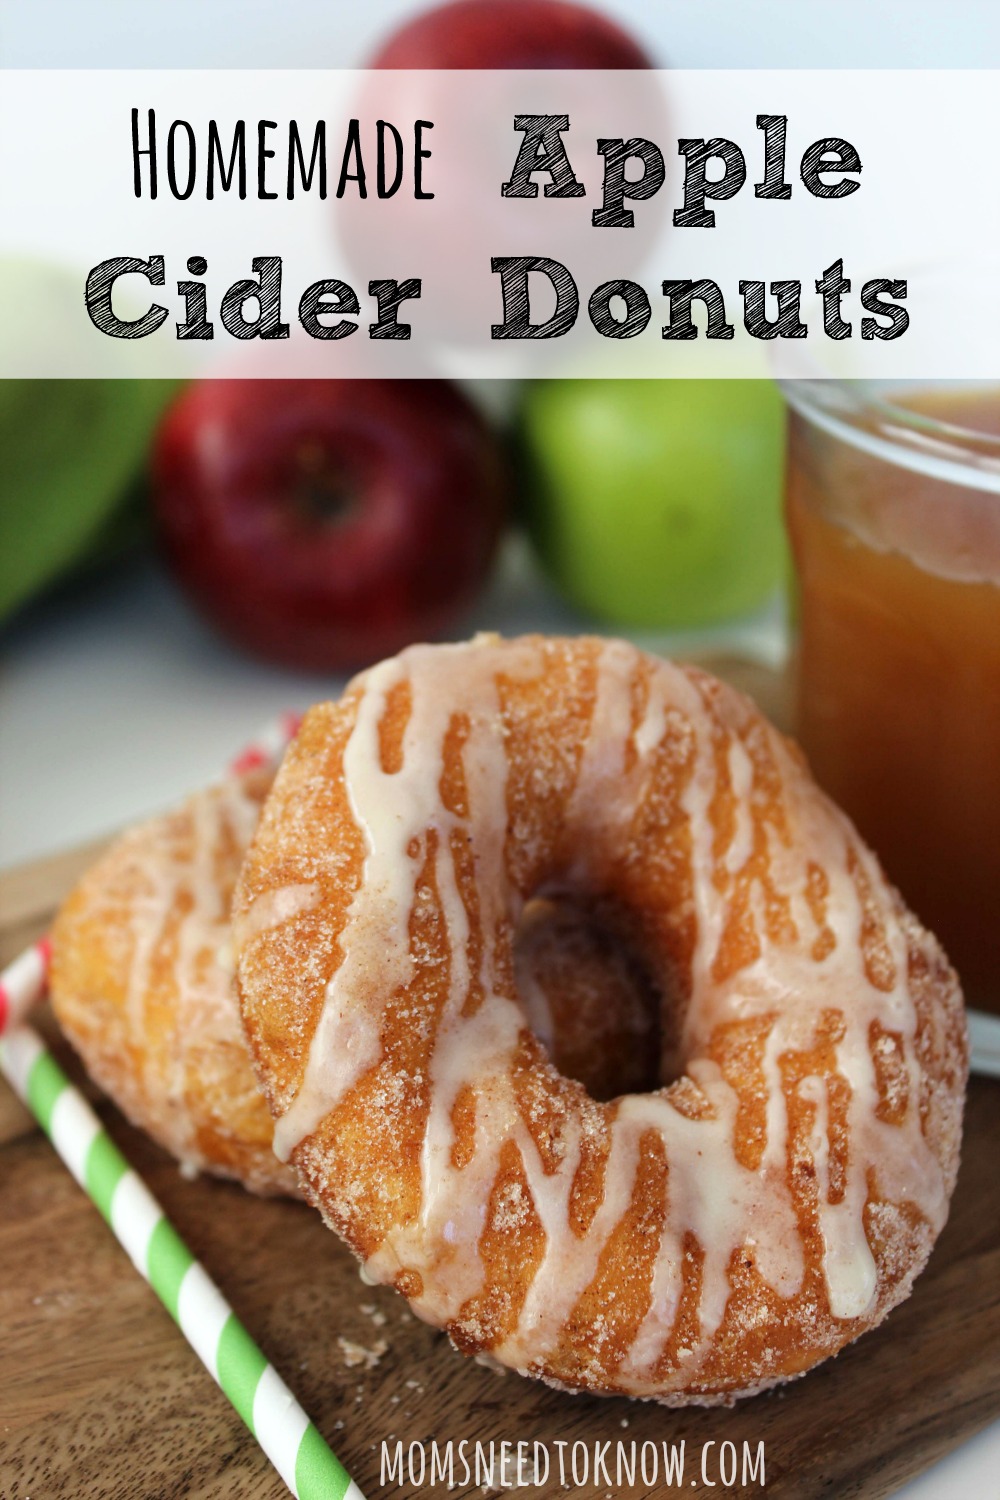 Homemade-Apple-Cider-Donuts-Recipe.jpg